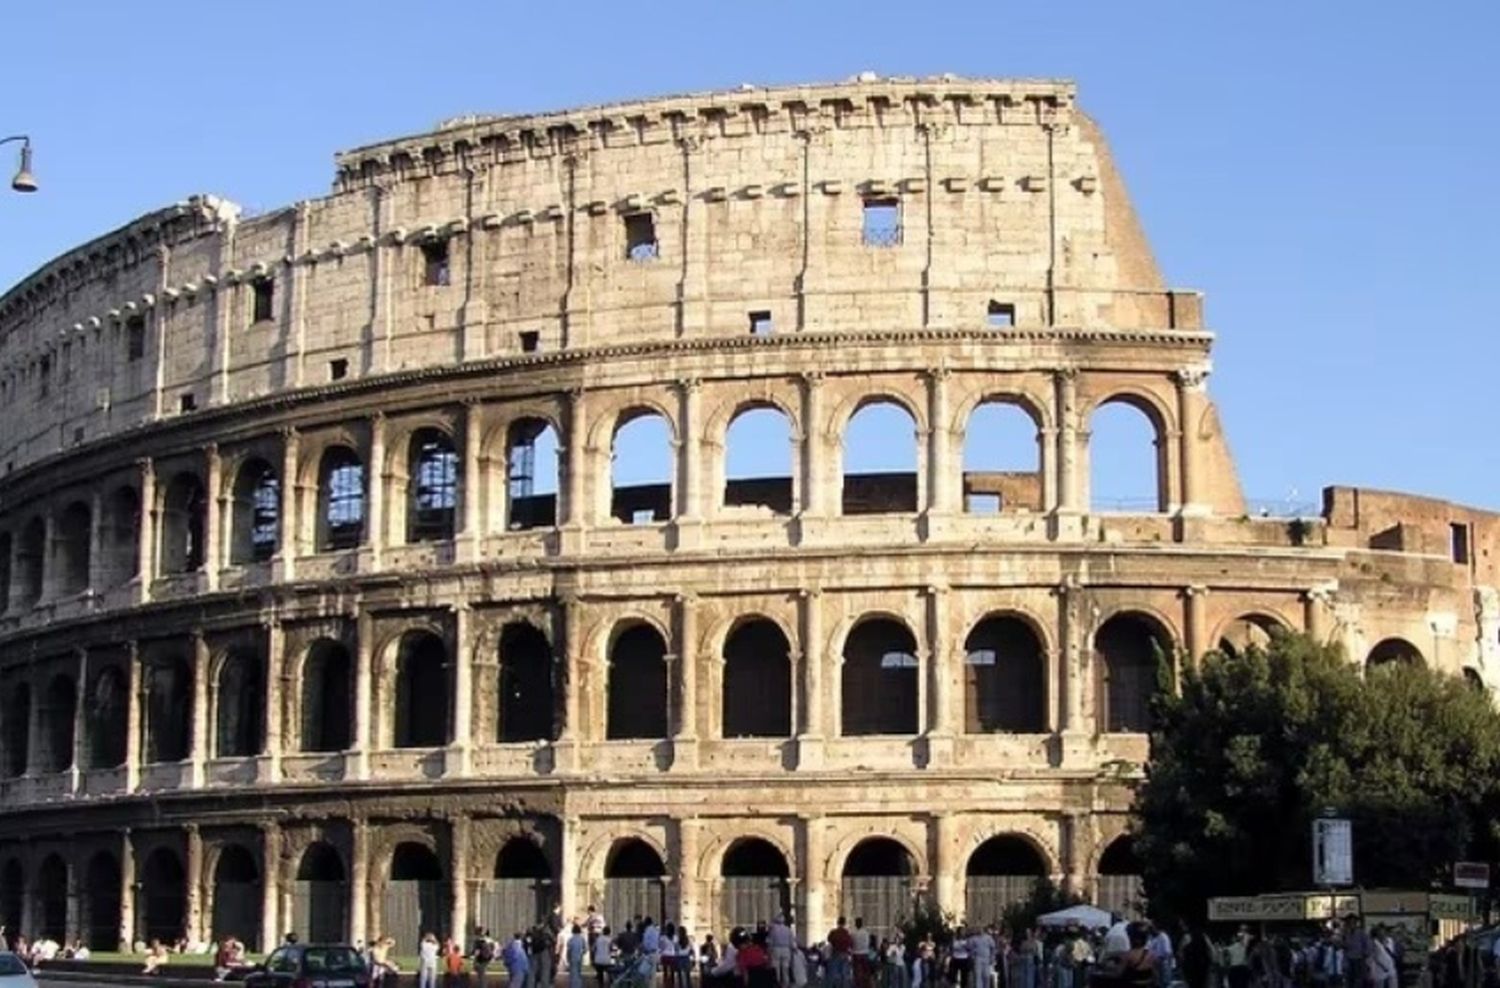 Vandalismo en el Coliseo: otra joven fue denunciada por grabar sus iniciales en uno de los muros del monumento romano